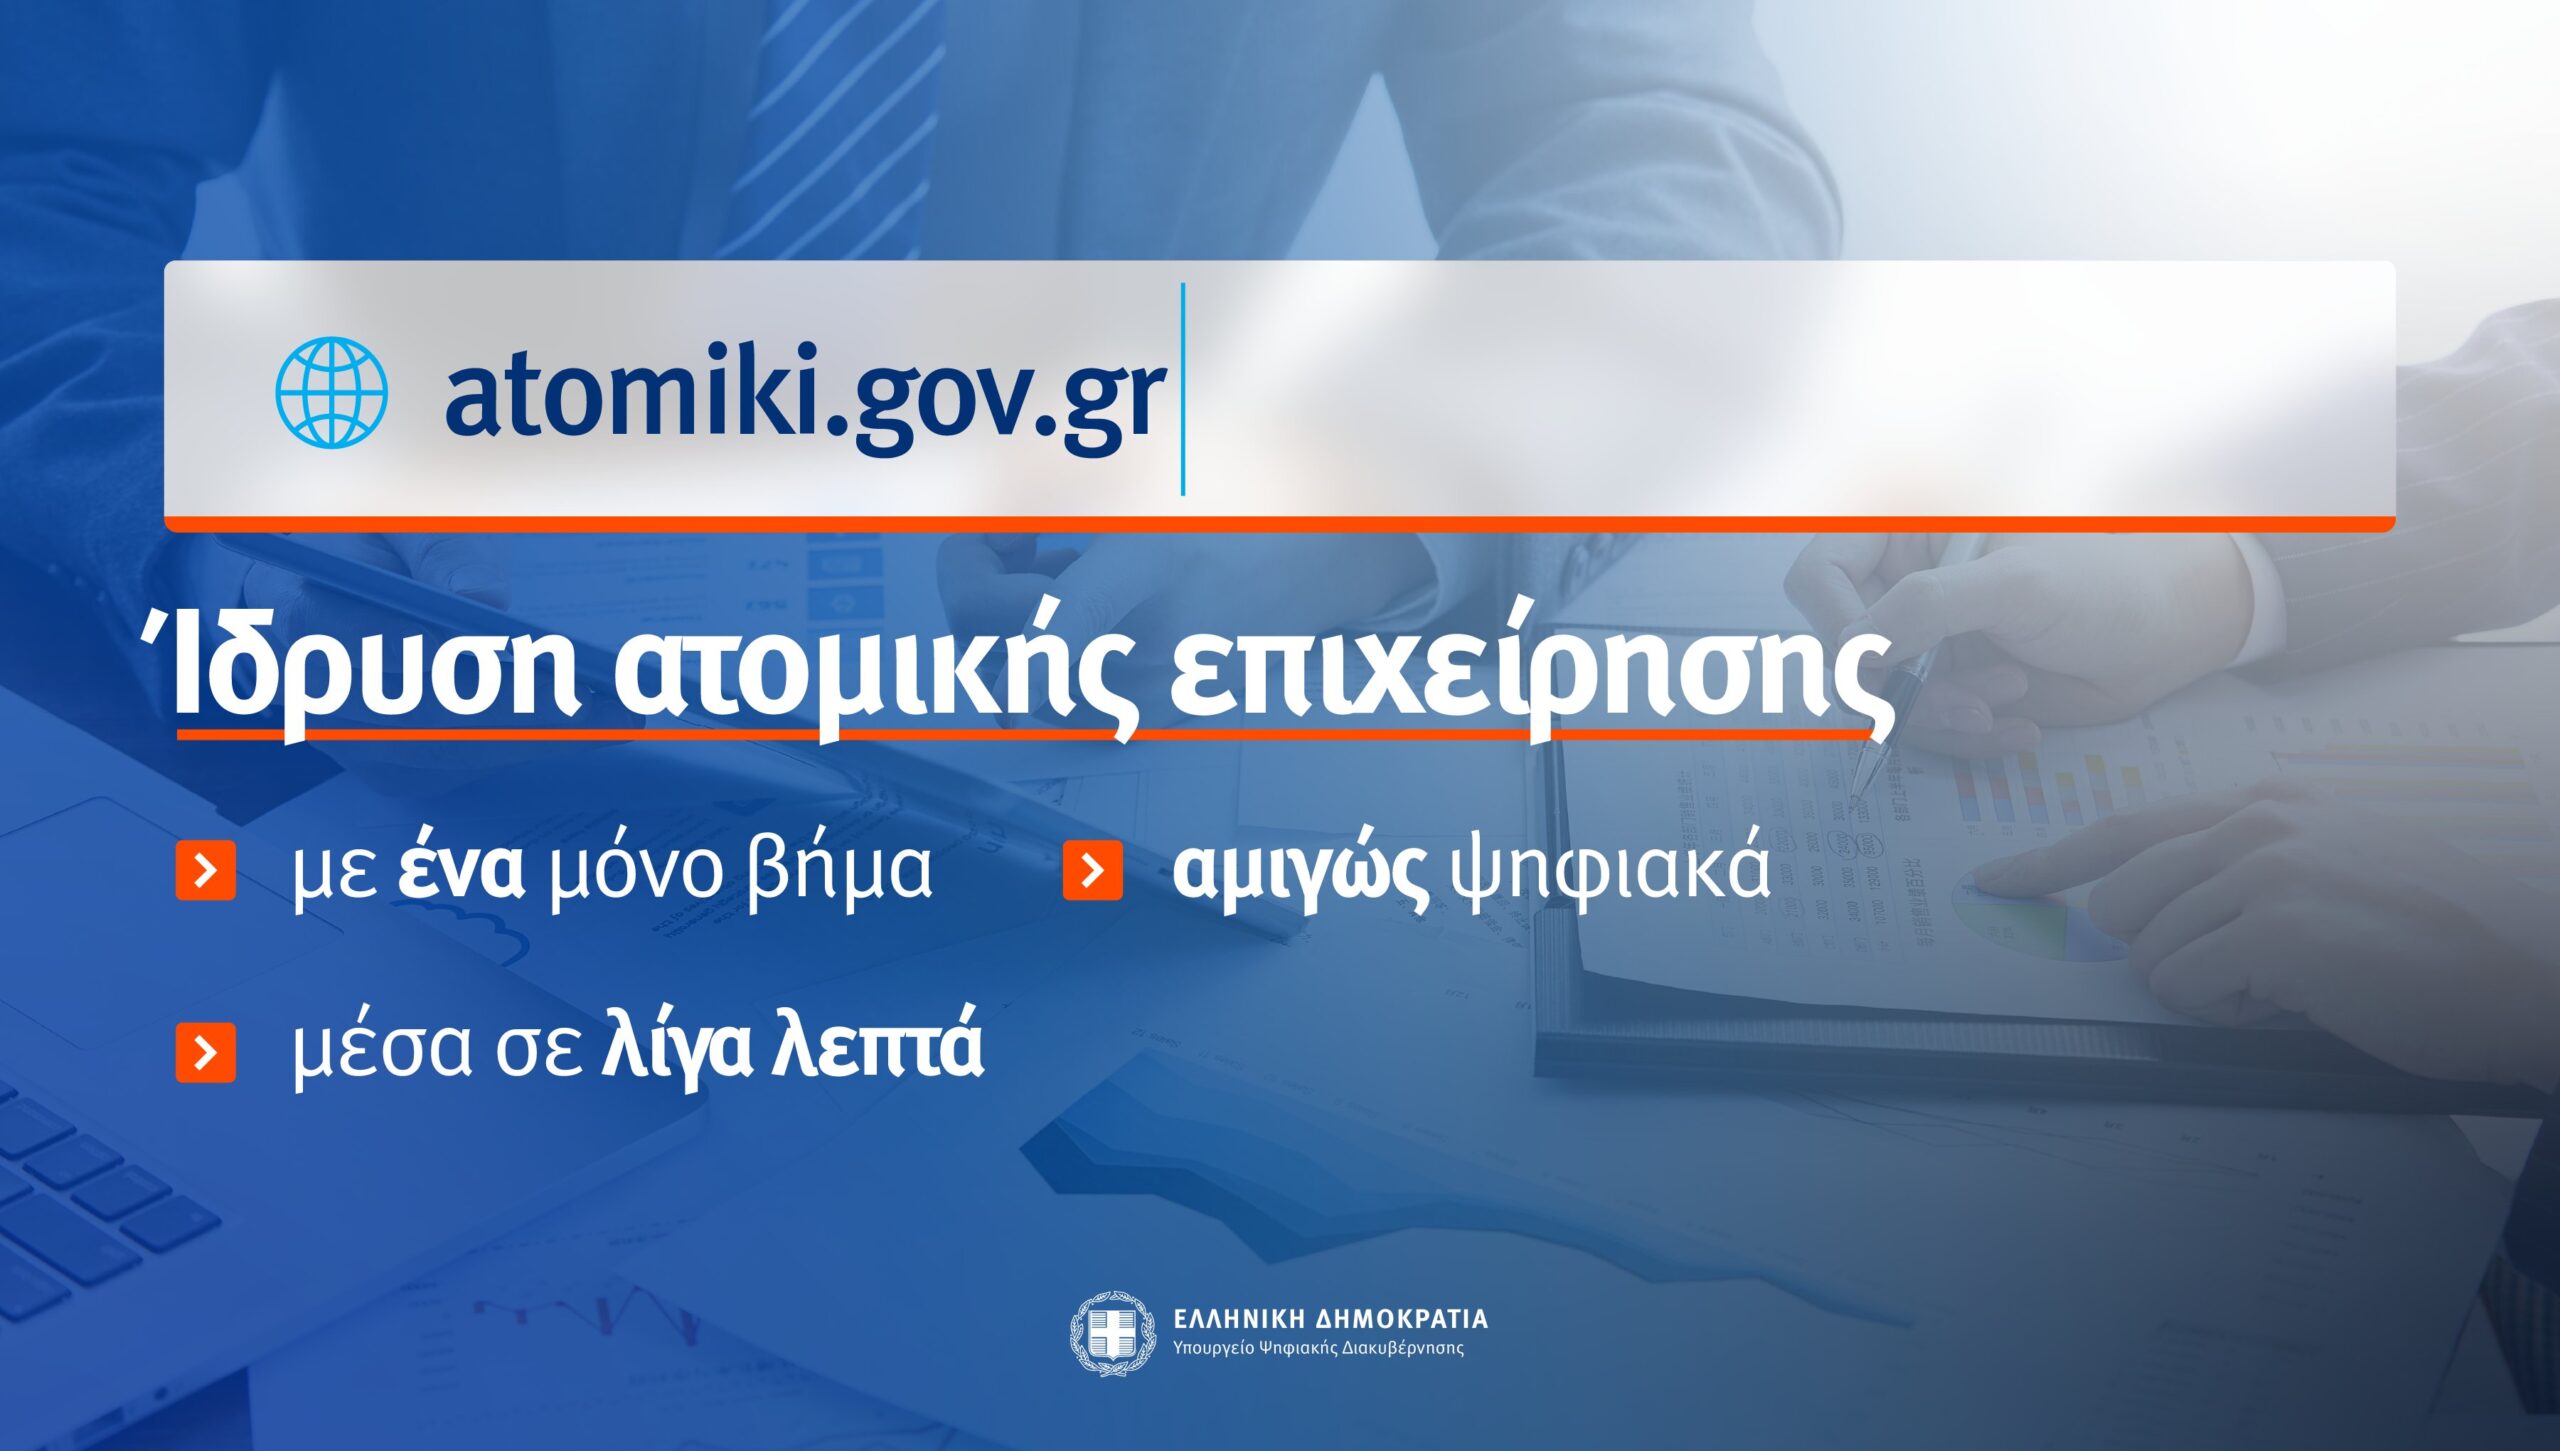 Η ίδρυση ατομικής επιχείρησης μέσα σε 5 λεπτά, μέσω του gov.gr